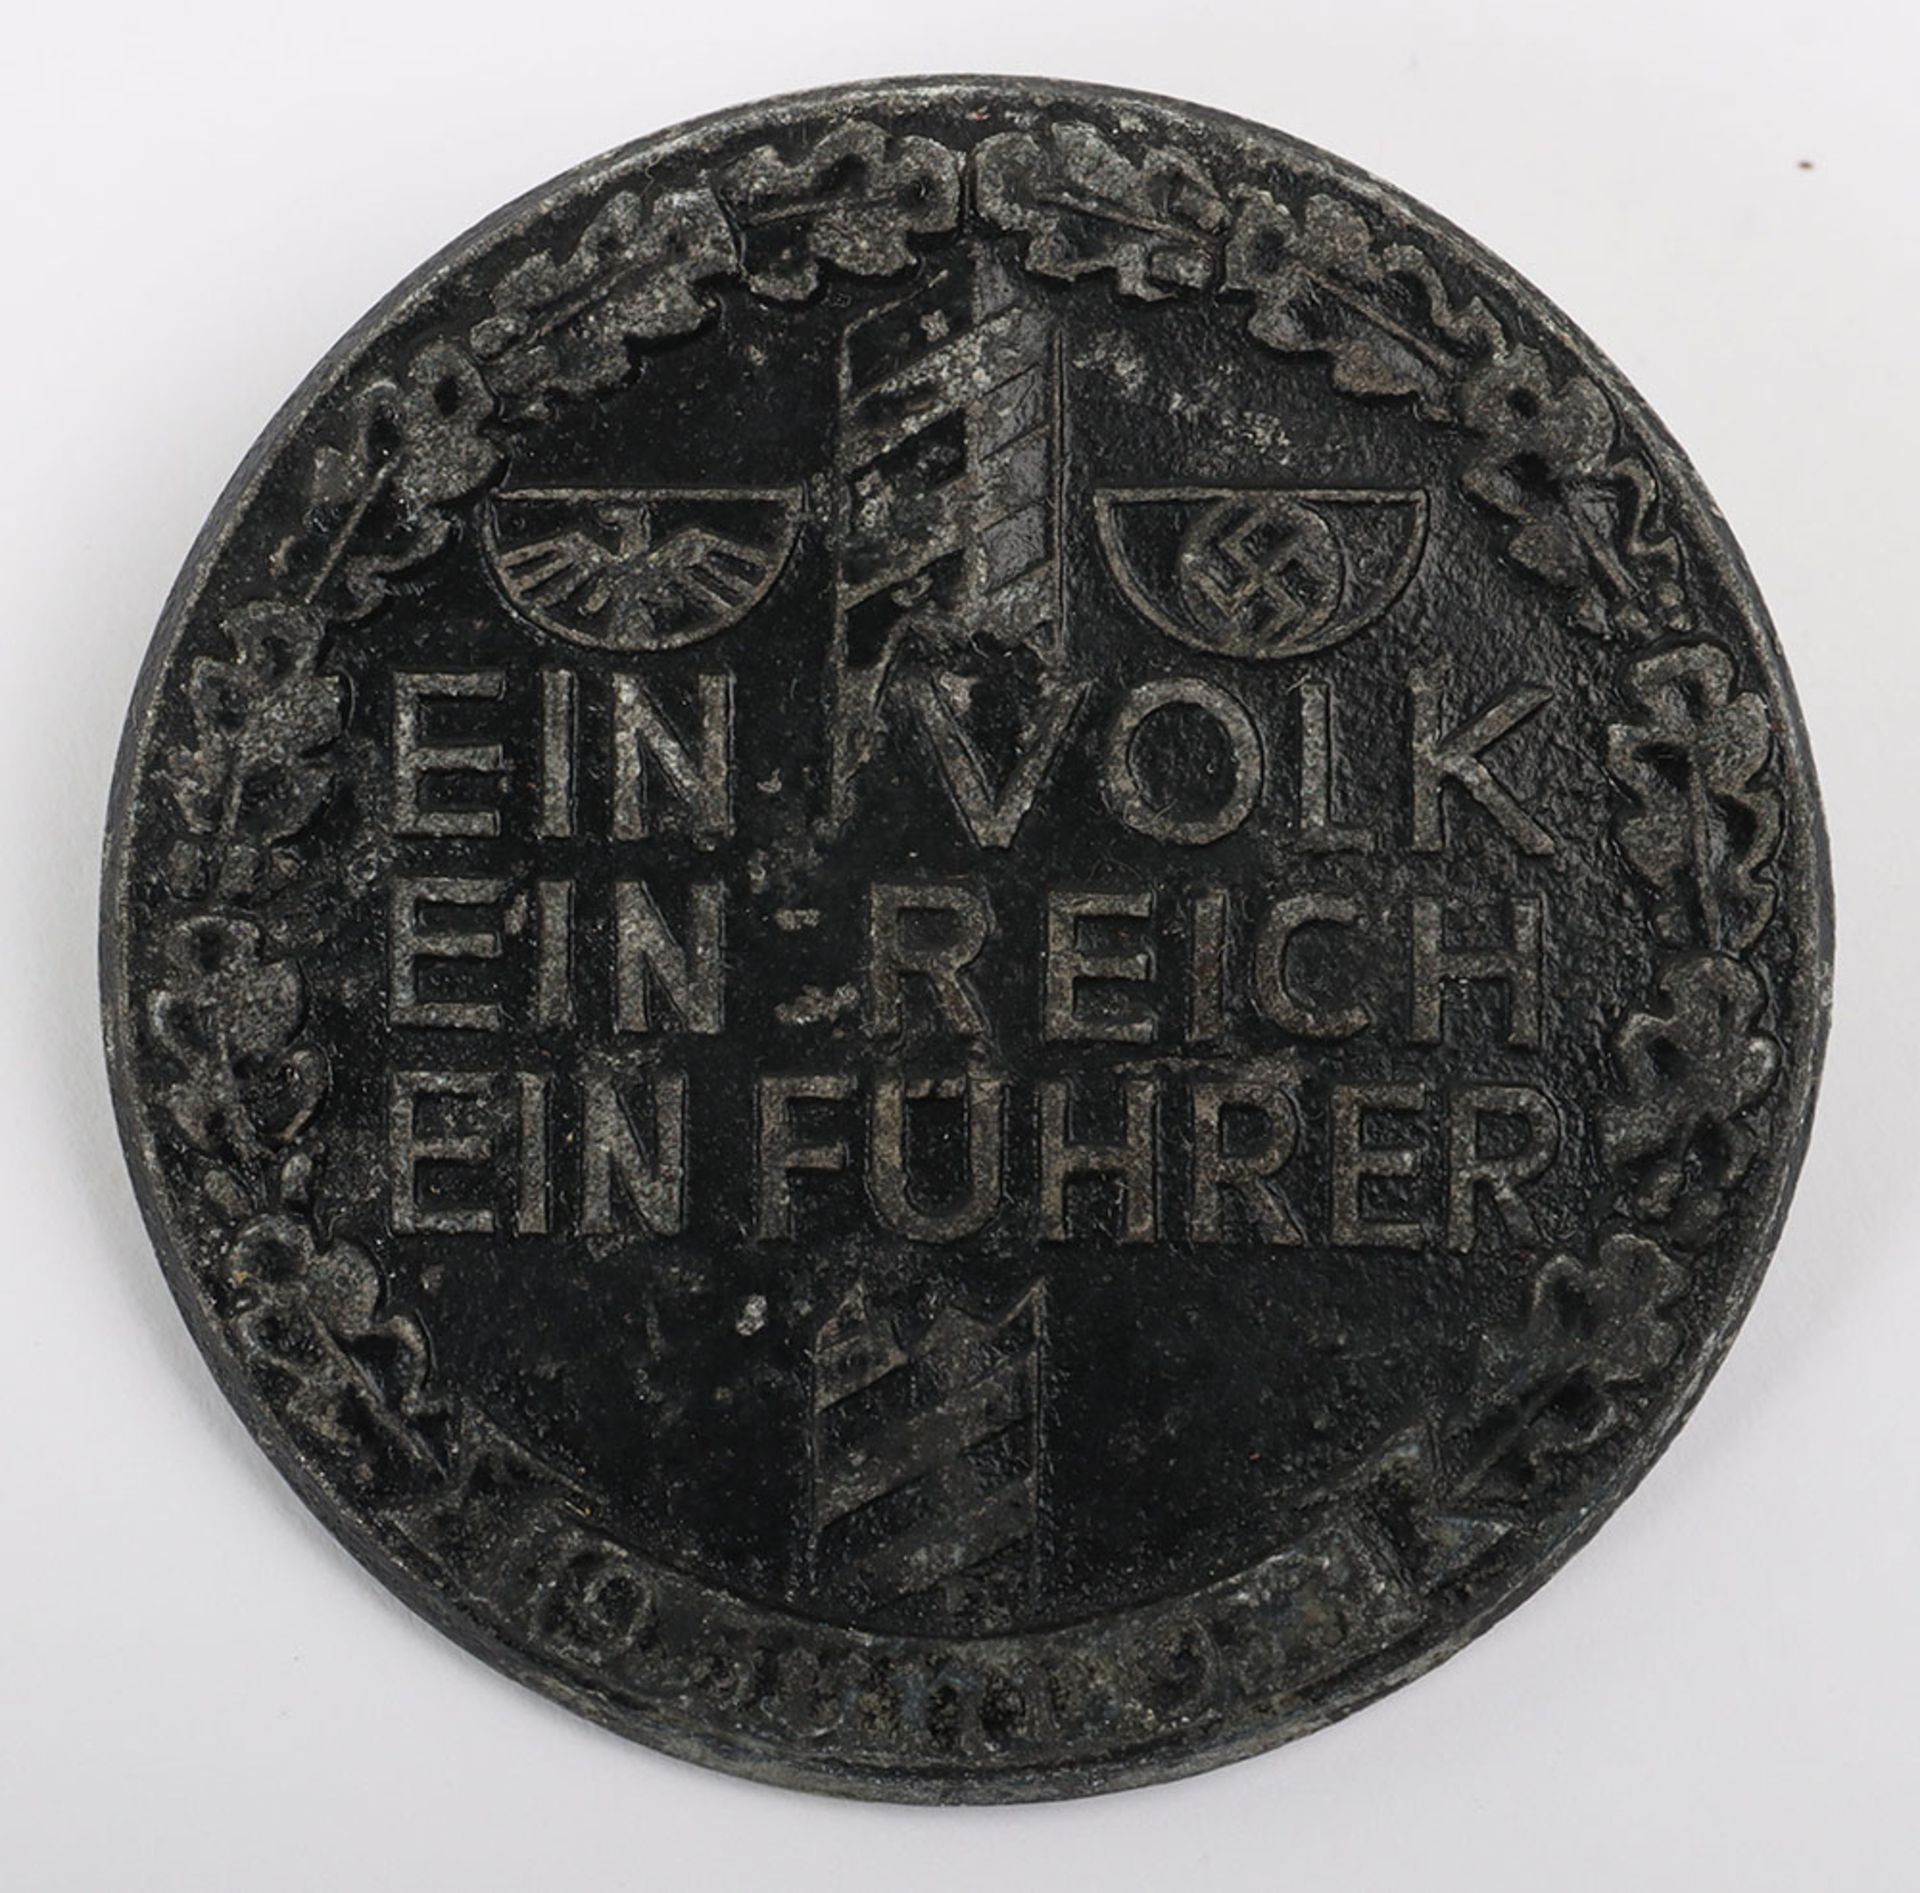 Third Reich ‘Ein Volk – Ein Reich – Ein Führer‘ Day Badge - Image 2 of 3